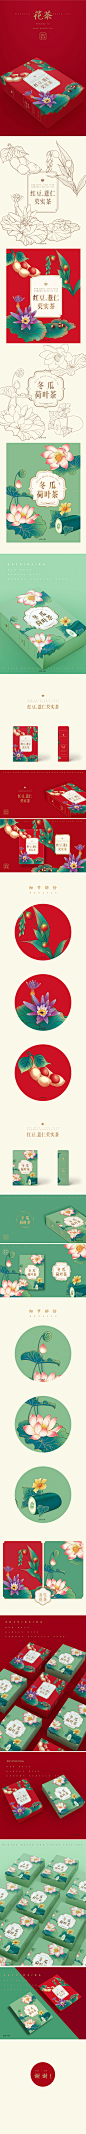 项目：红豆薏仁芡实茶、冬瓜荷叶茶包装插画
插画、设计：简小简
三维模型：MeiMeiLing


这是一个可爱客户的单子，喜好对味，全程合作很愉快！
包装插画需求整体风格中国古典风，植物主题
画面饱满，体现茶品的主要原料，采用复古色彩，在同类目上具有辨识度。
感谢@MeiMeiLing大力支持！谢谢
（插画已商用）